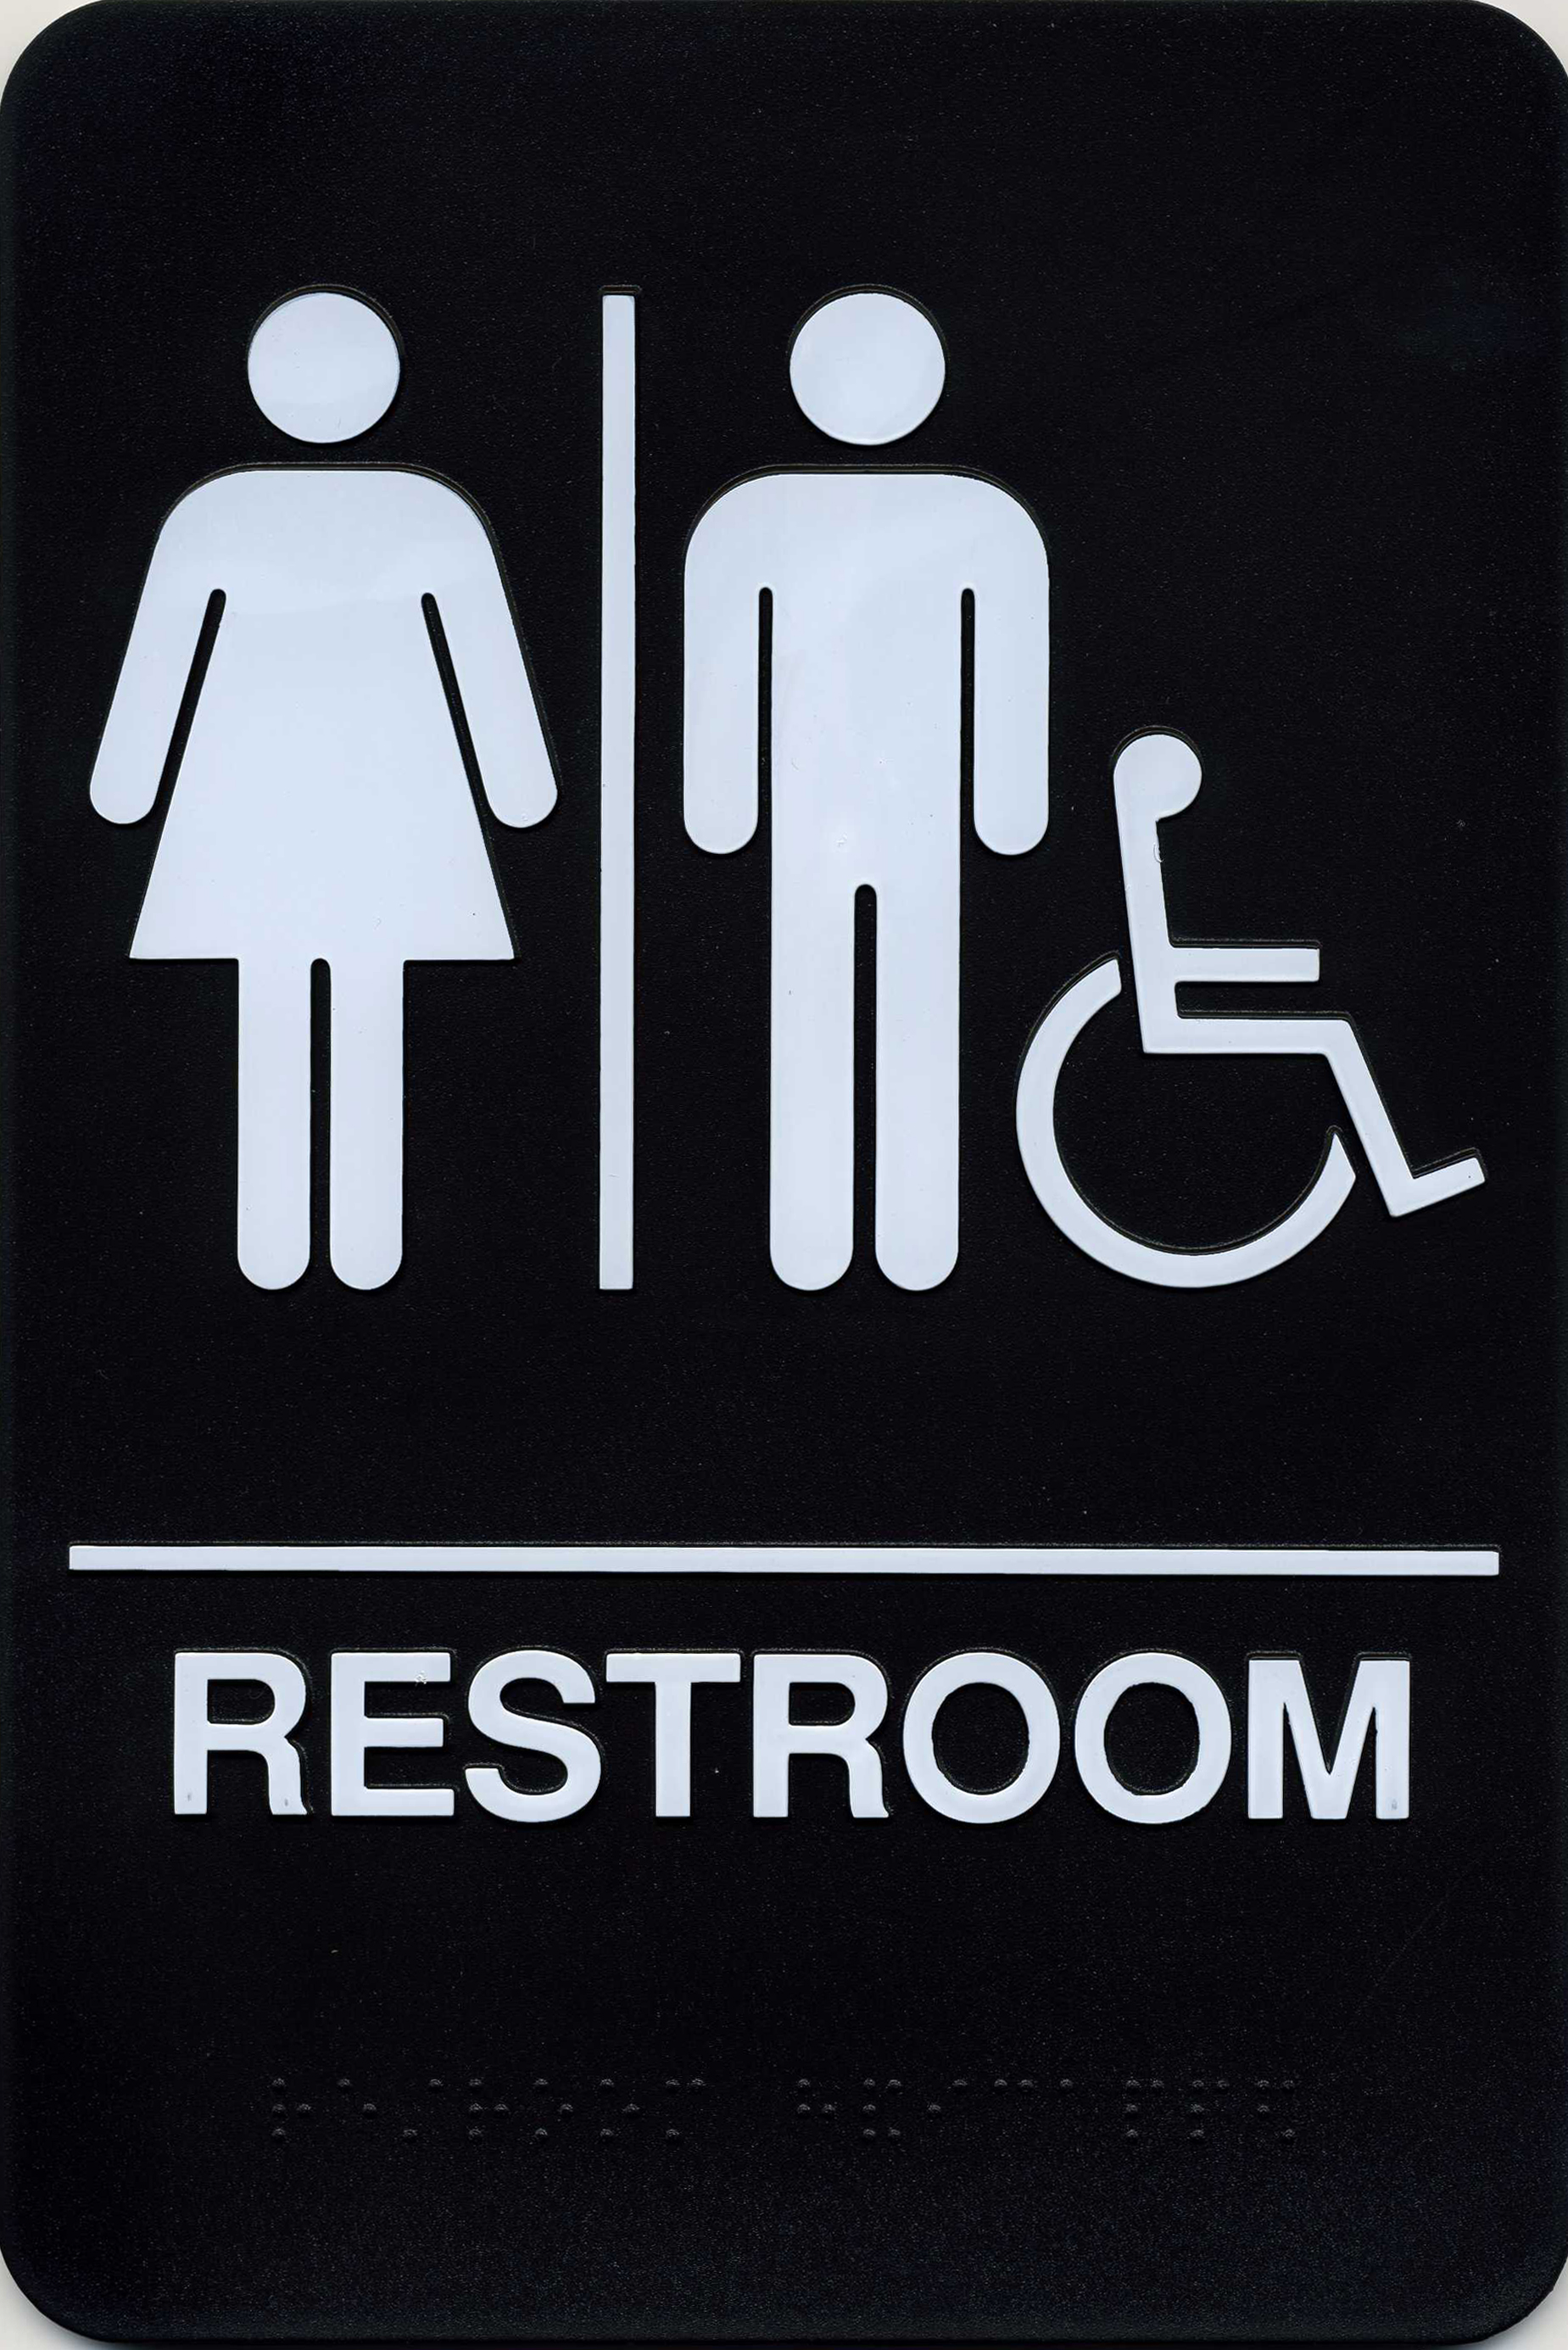 Free Restroom Sign Download Free Restroom Sign png images Free